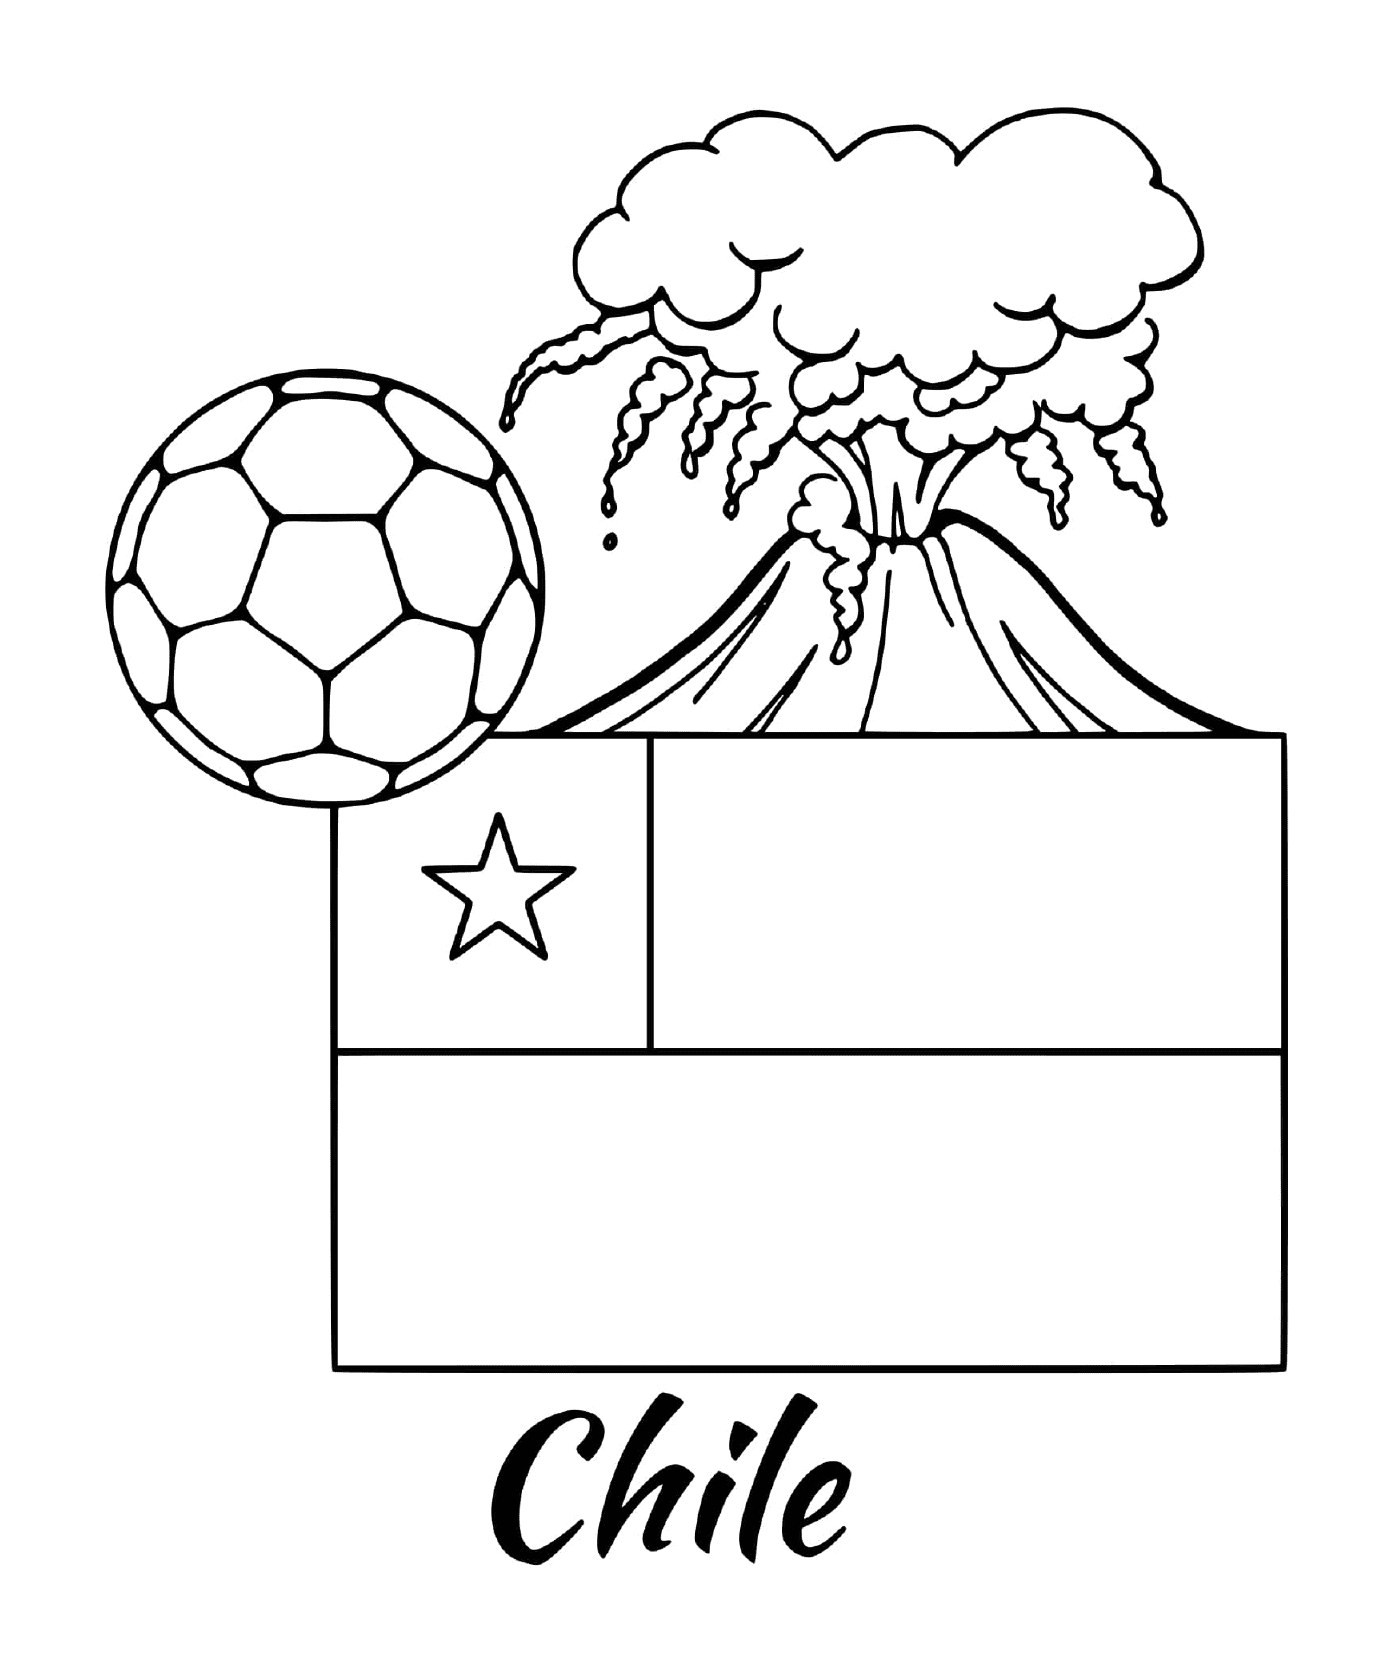  علم شيلي، 